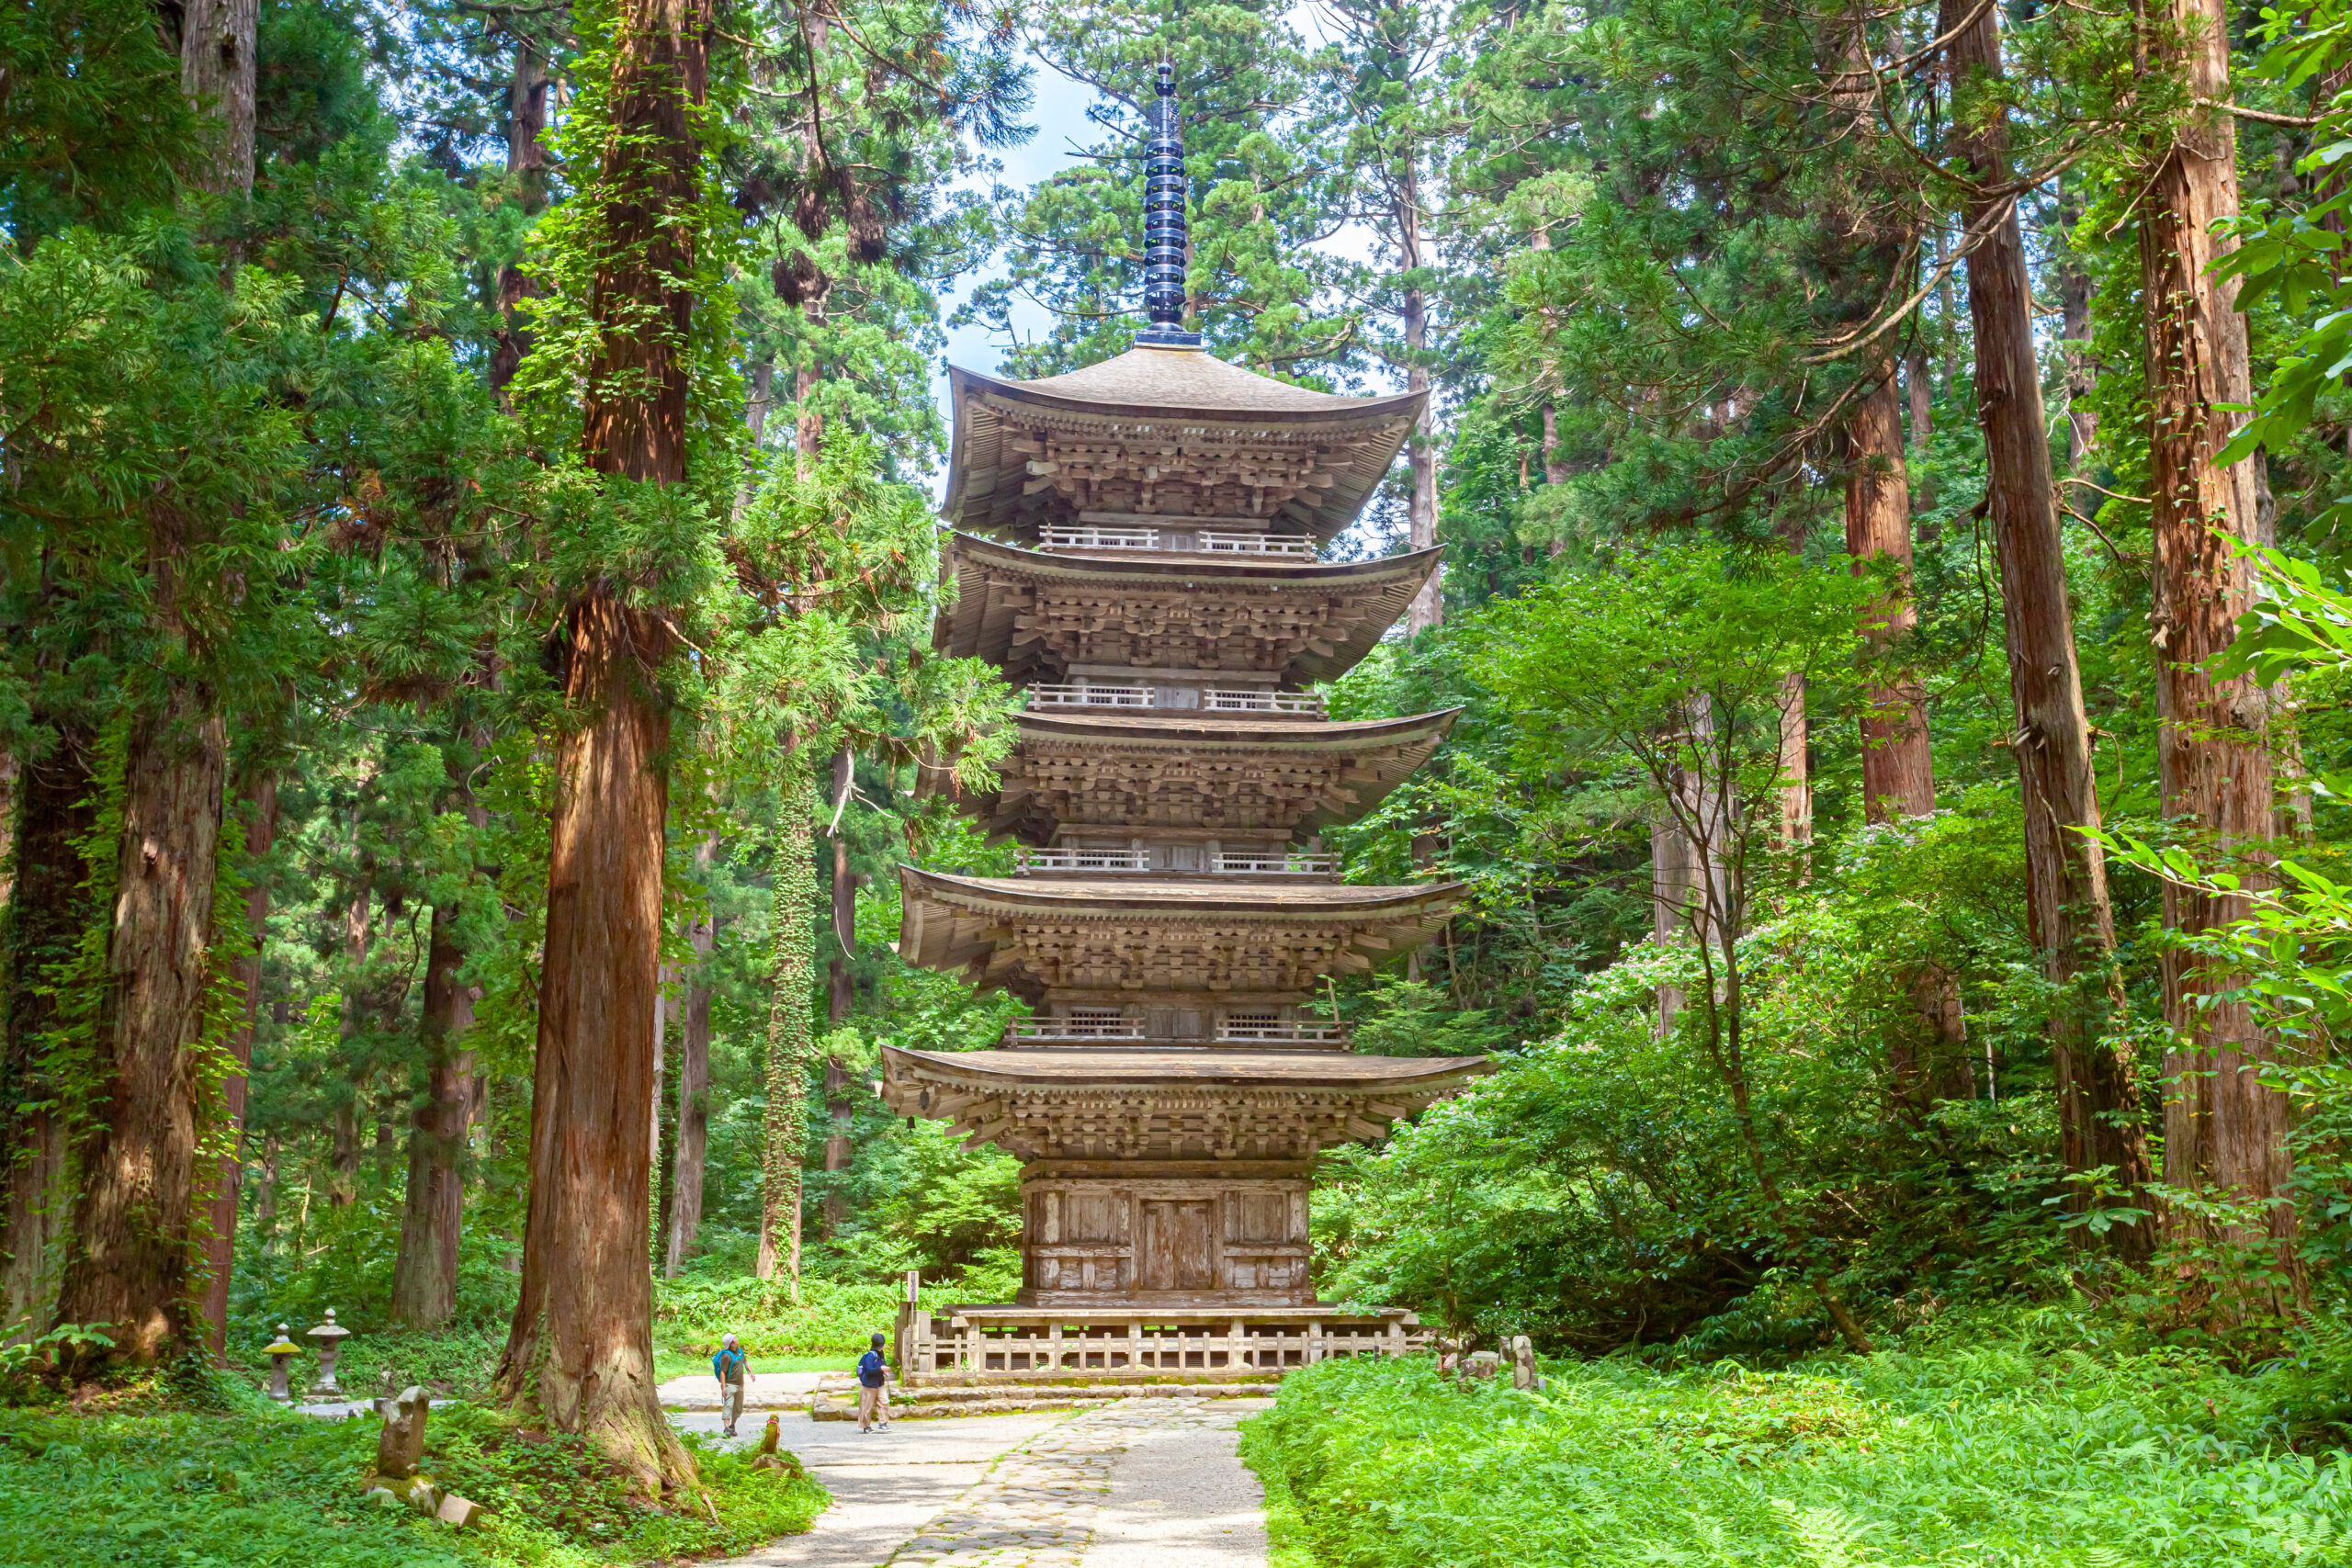 羽黒山山頂にある出羽神社の社殿・三神合祭殿。参道には国宝五重塔がある。